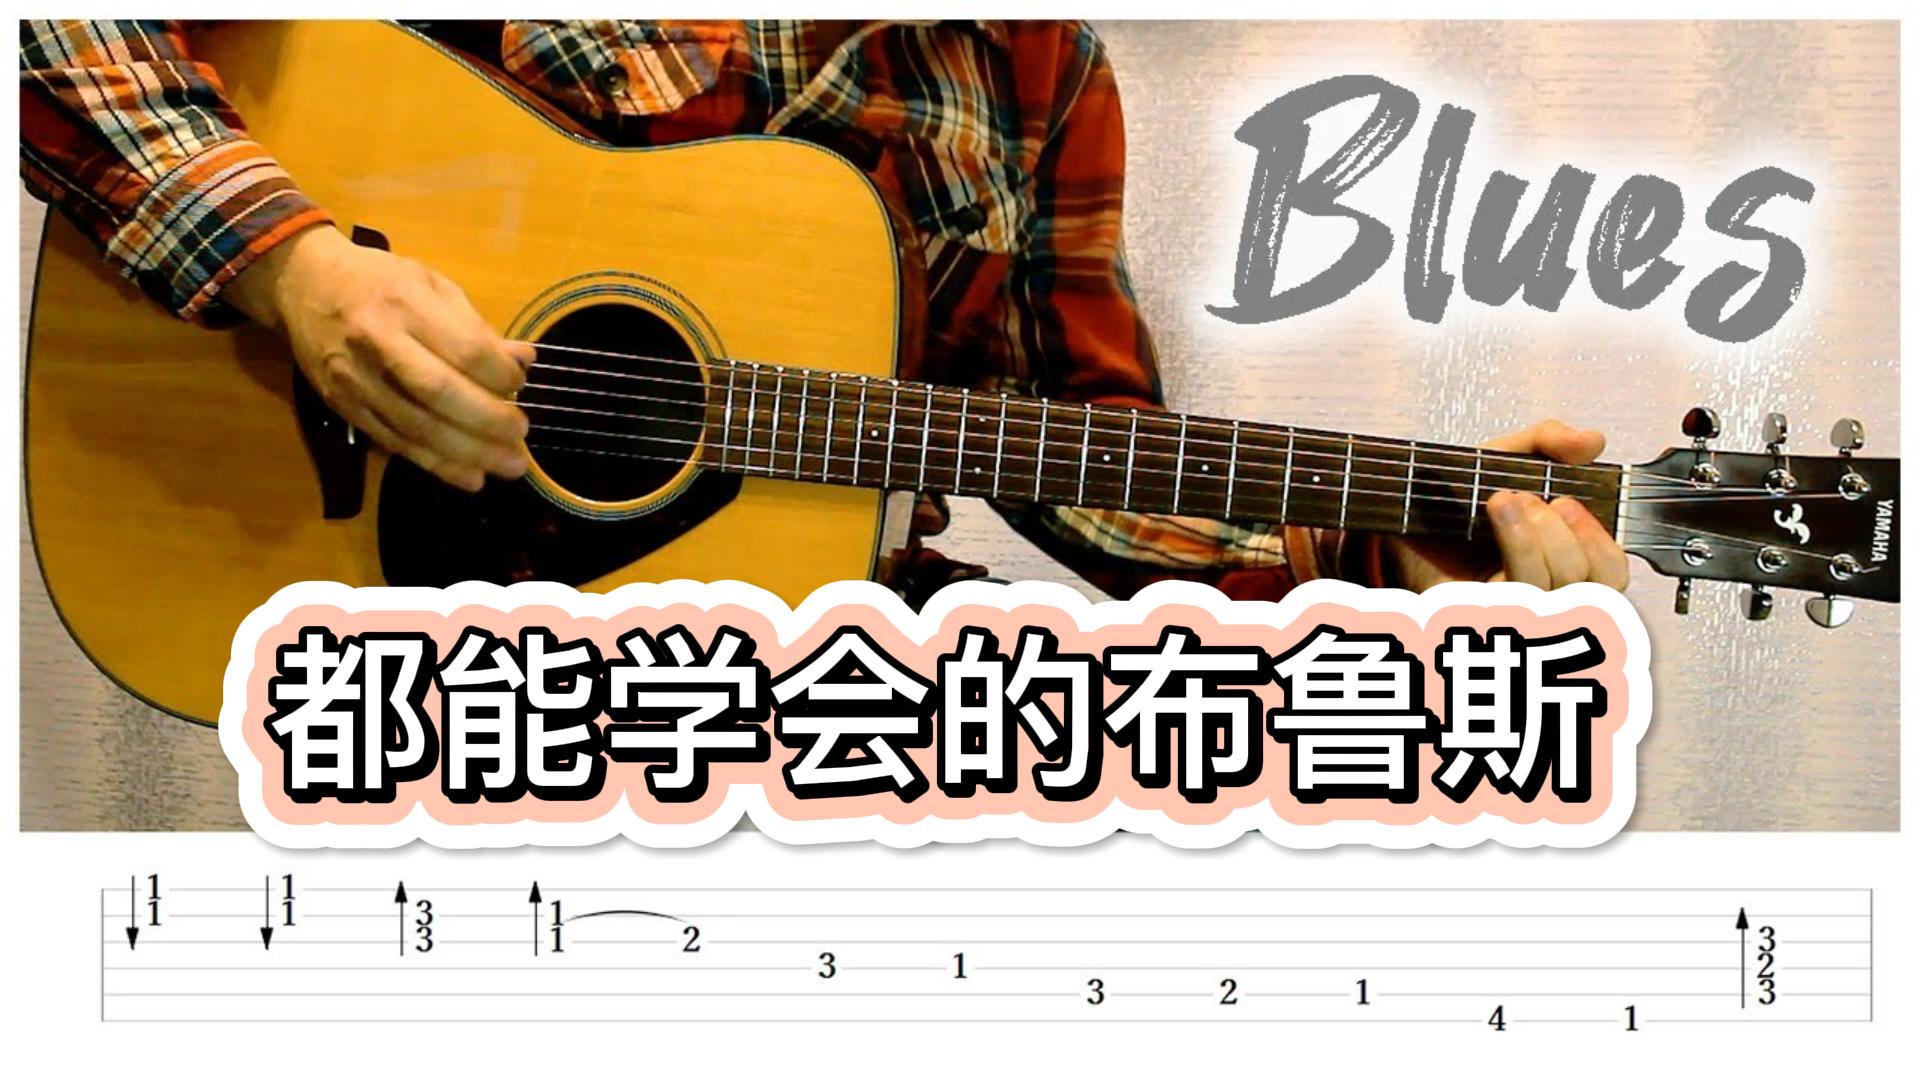 推荐一段谁都可以学会的布鲁斯吉他-古桐博客